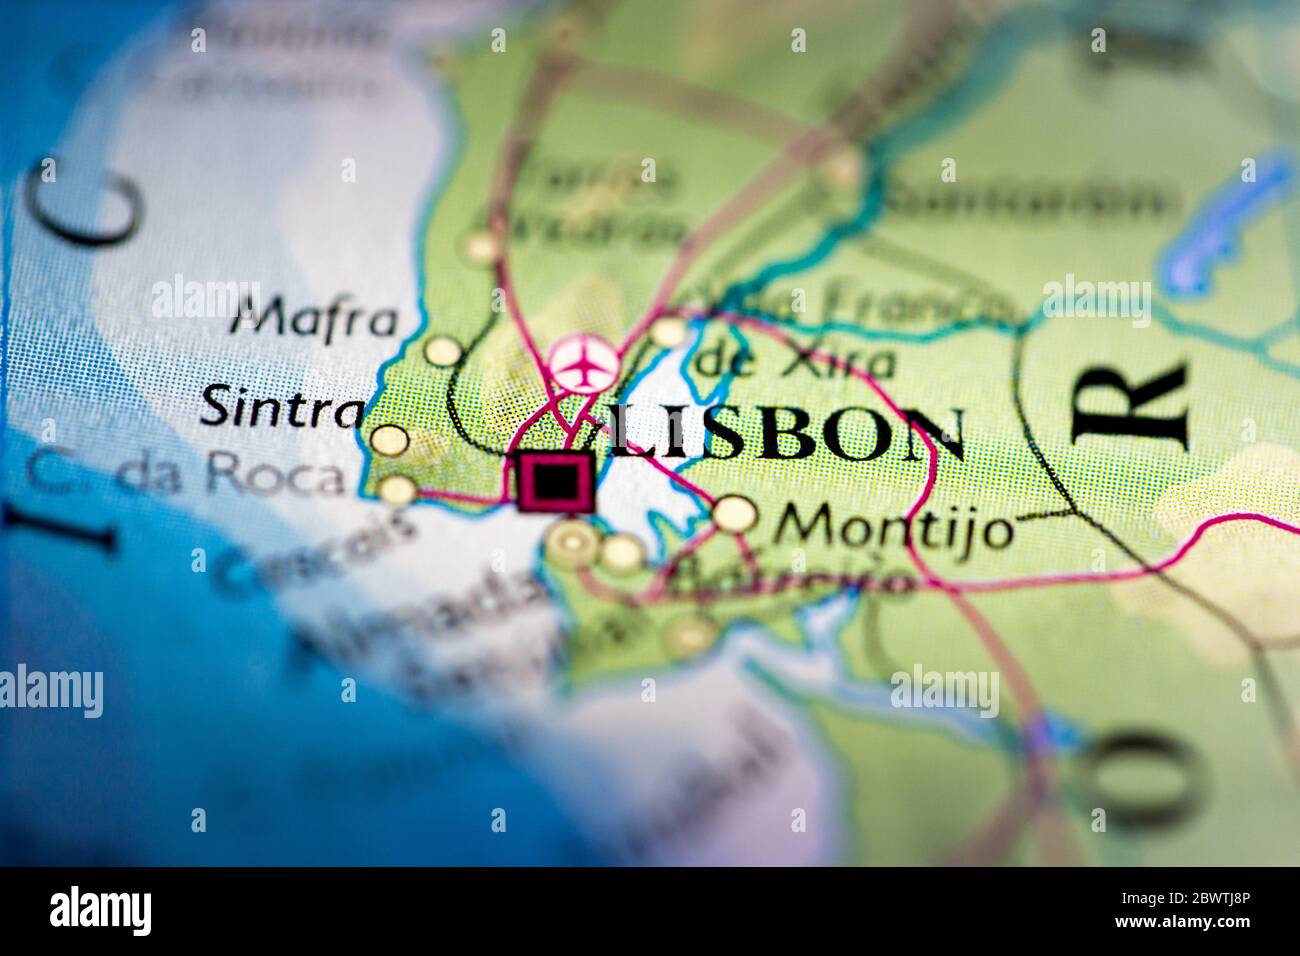 Profundidad de campo reducida se centra en la ubicación del mapa geográfico de Lisboa ciudad Portugal Mediterráneo Europa continente en atlas Foto de stock